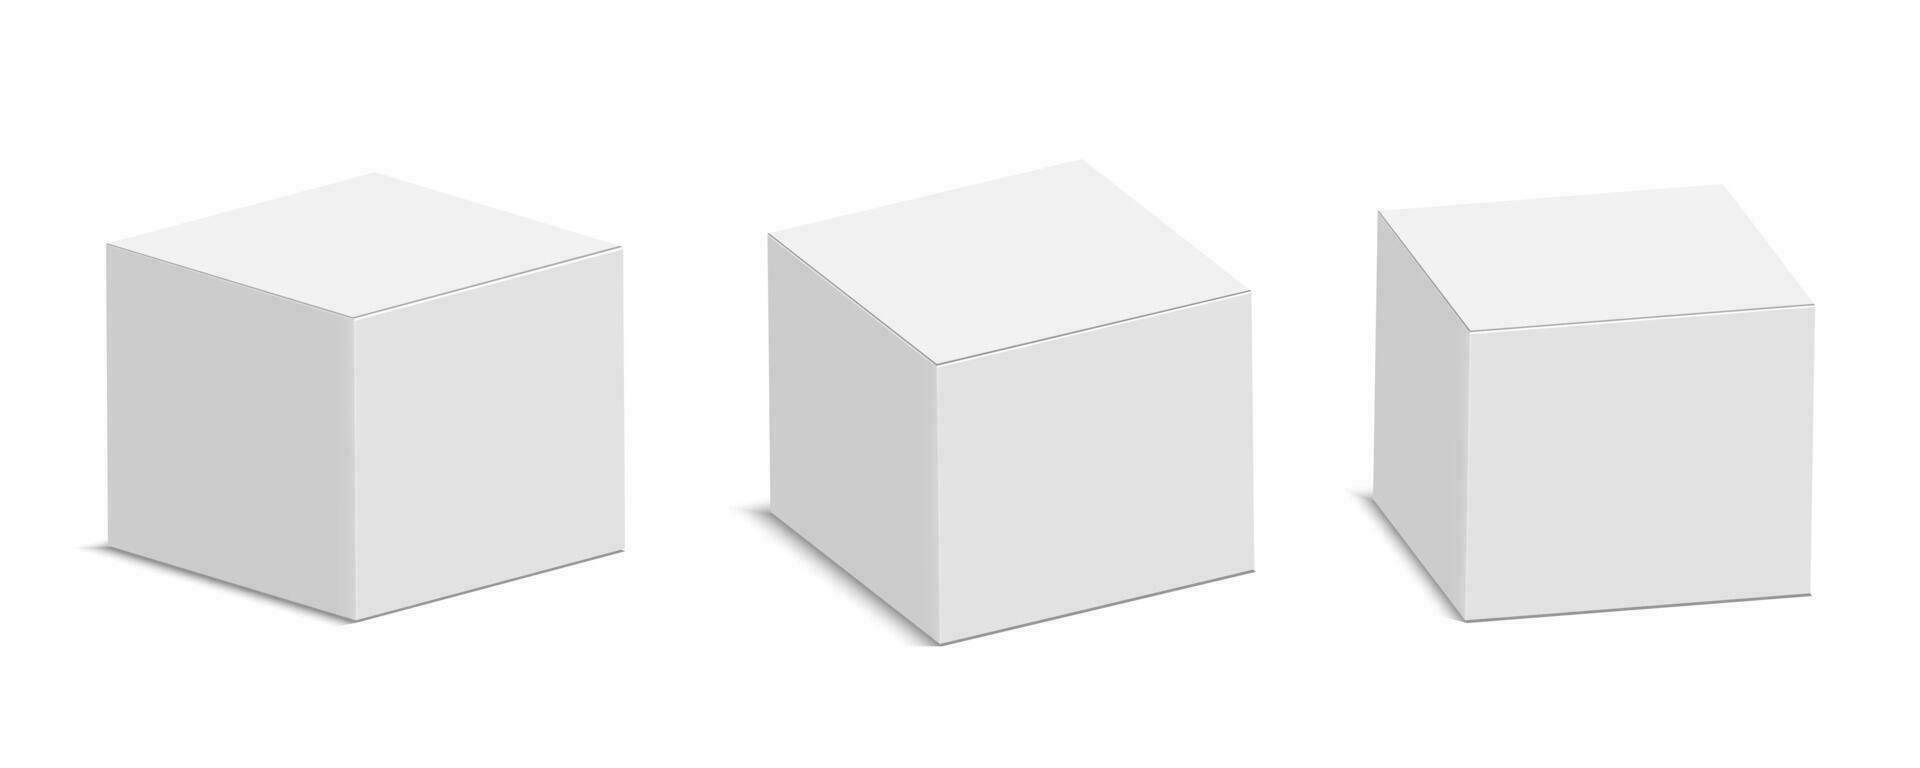 blanco cartulina paquete caja modelo. realista vacío caja Bosquejo para producto embalaje aislado en blanco antecedentes. vector ilustración